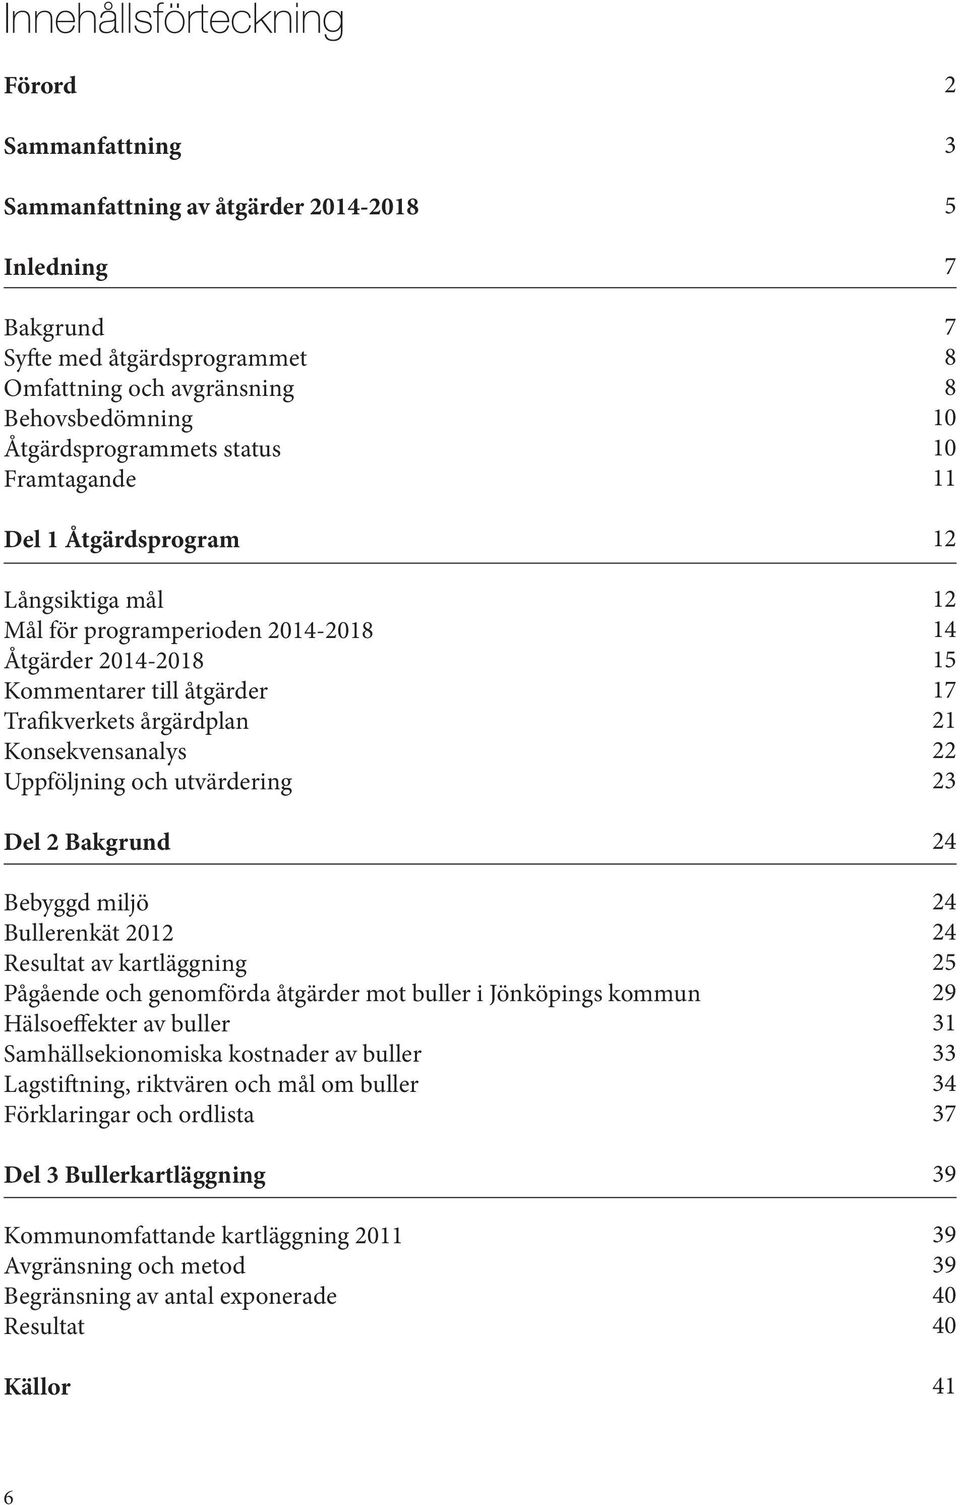 Del 2 Bakgrund Bebyggd miljö Bullerenkät 2012 Resultat av kartläggning Pågående och genomförda åtgärder mot buller i Jönköpings kommun Hälsoeffekter av buller Samhällsekionomiska kostnader av buller